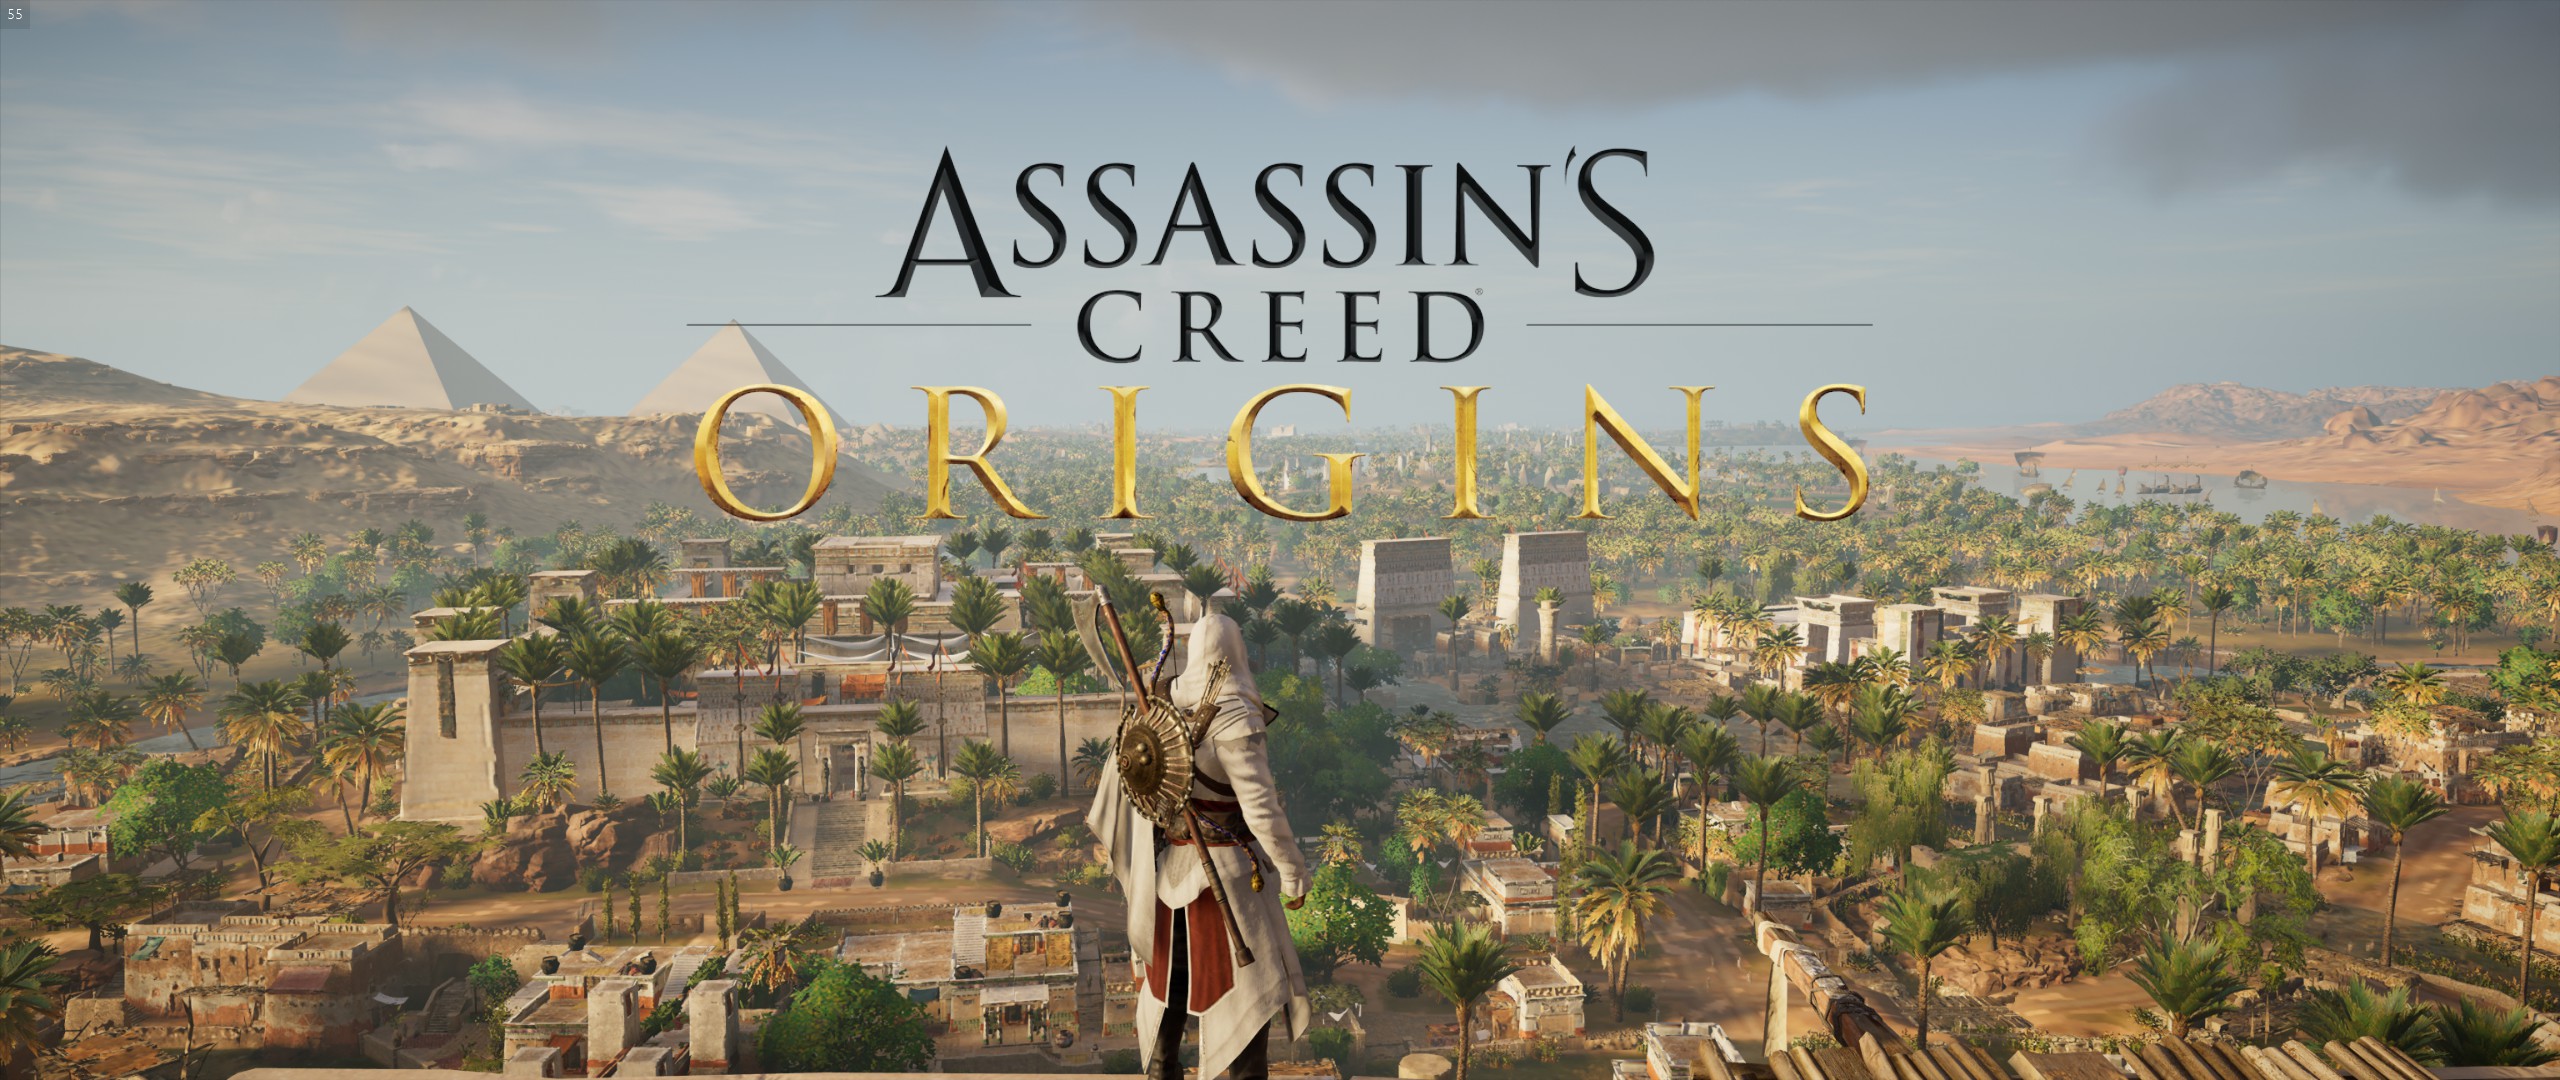 Assassin's Creed® Origins2018-1-25-14-55-2.jpg